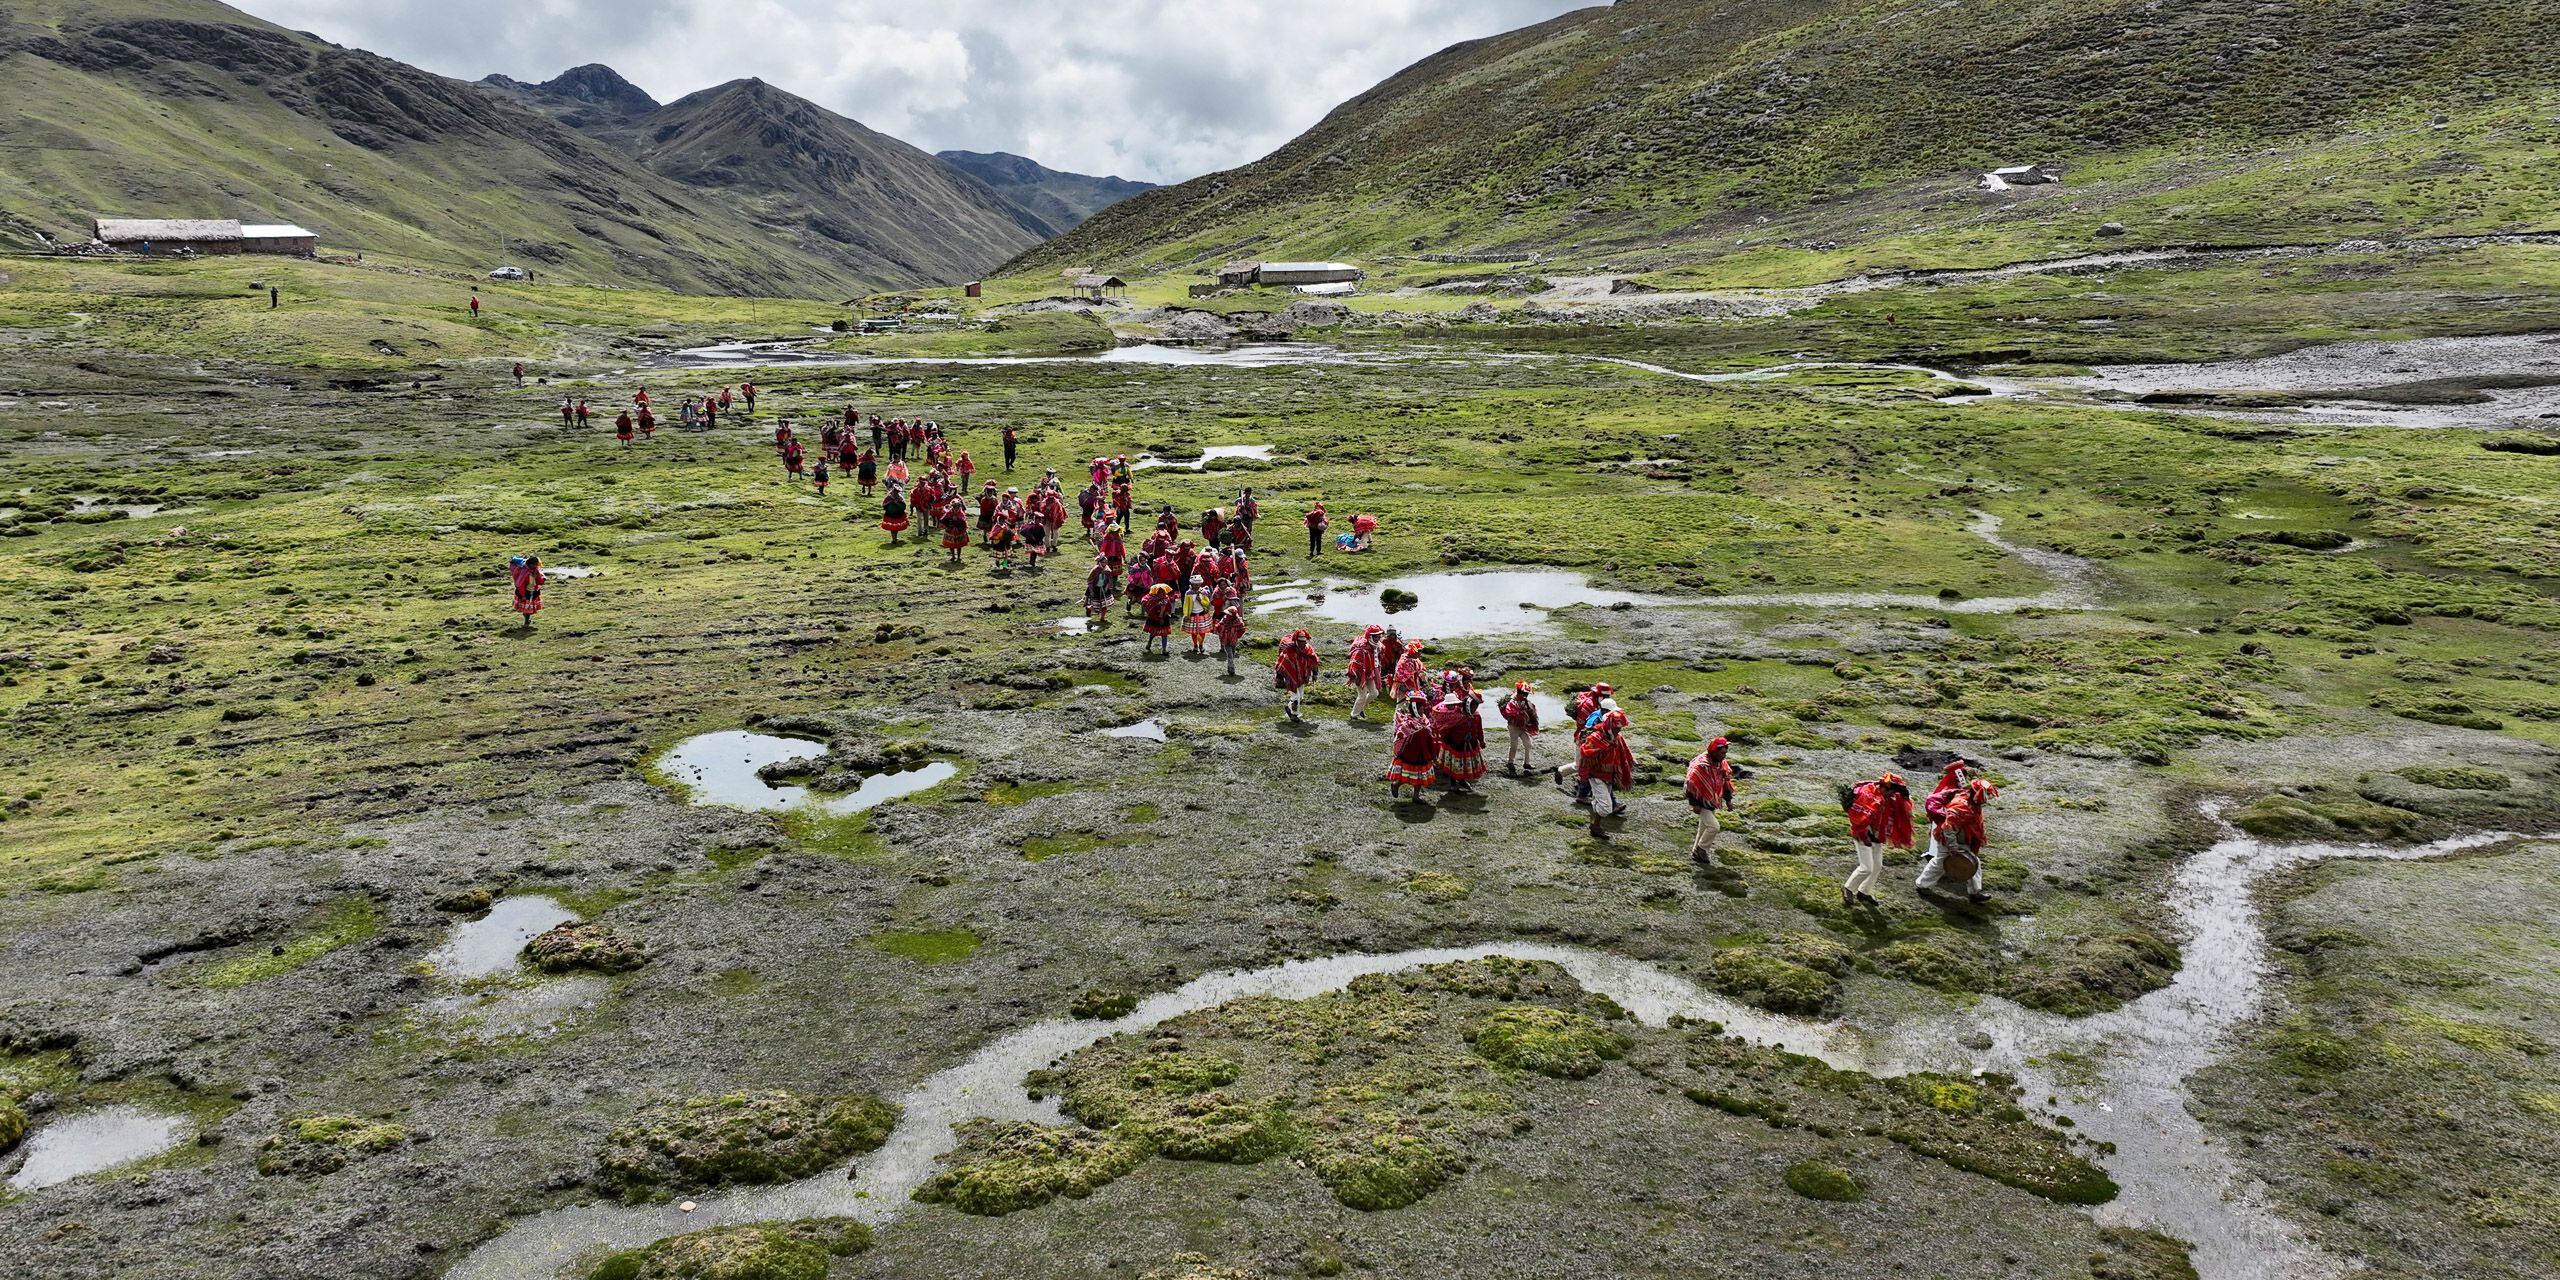 Un grupo de personas se dirige a plantar queñuales ('Polylepis') cerca del pueblo de Vilcanota, en la región de Cuzco.